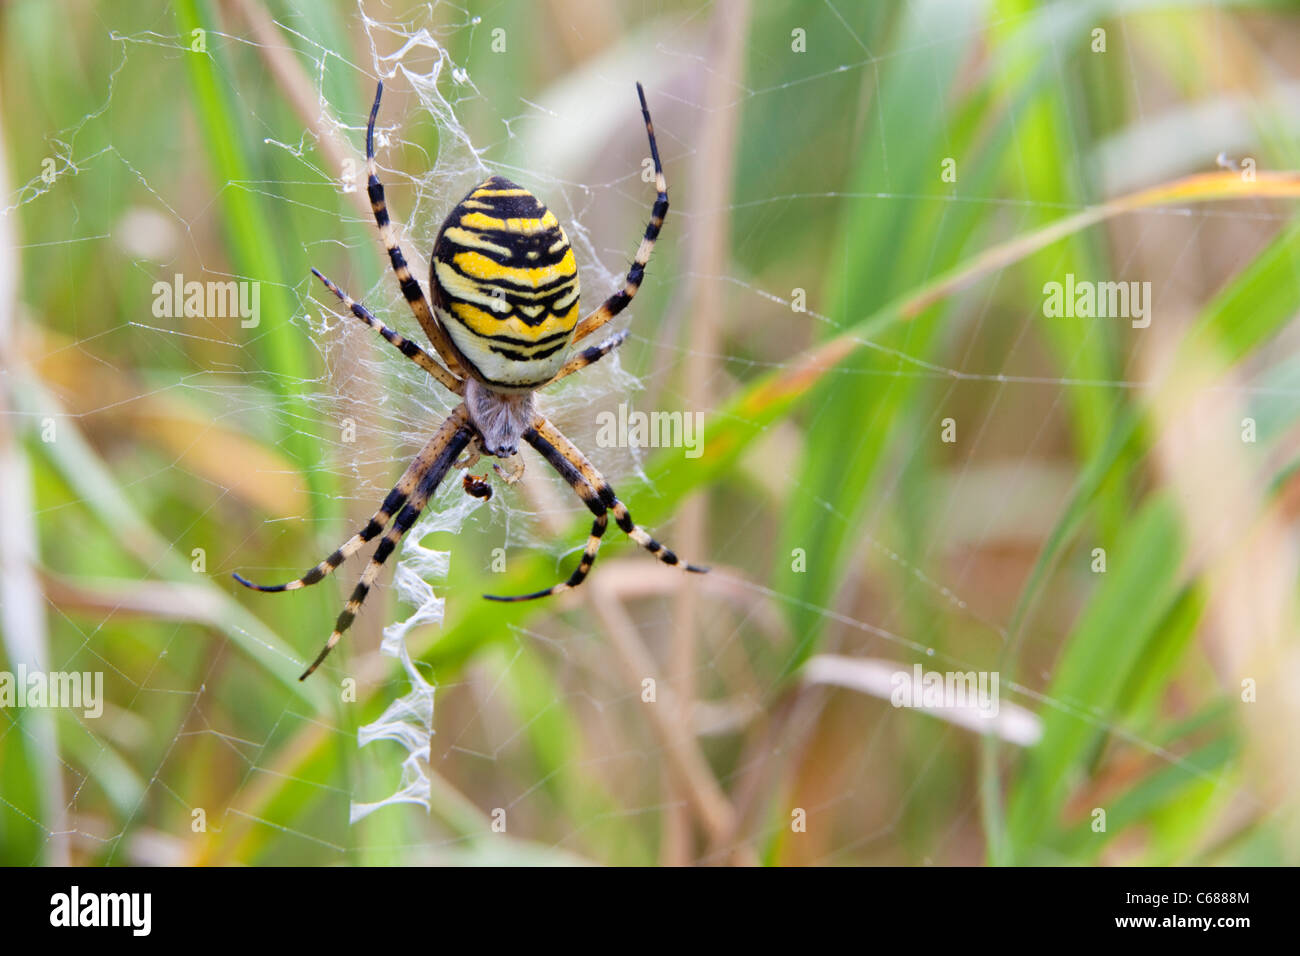 Wasp Spider Argiope bruennichi showing zigzag stabilimentum woven into web , Essex, UK, summer Stock Photo